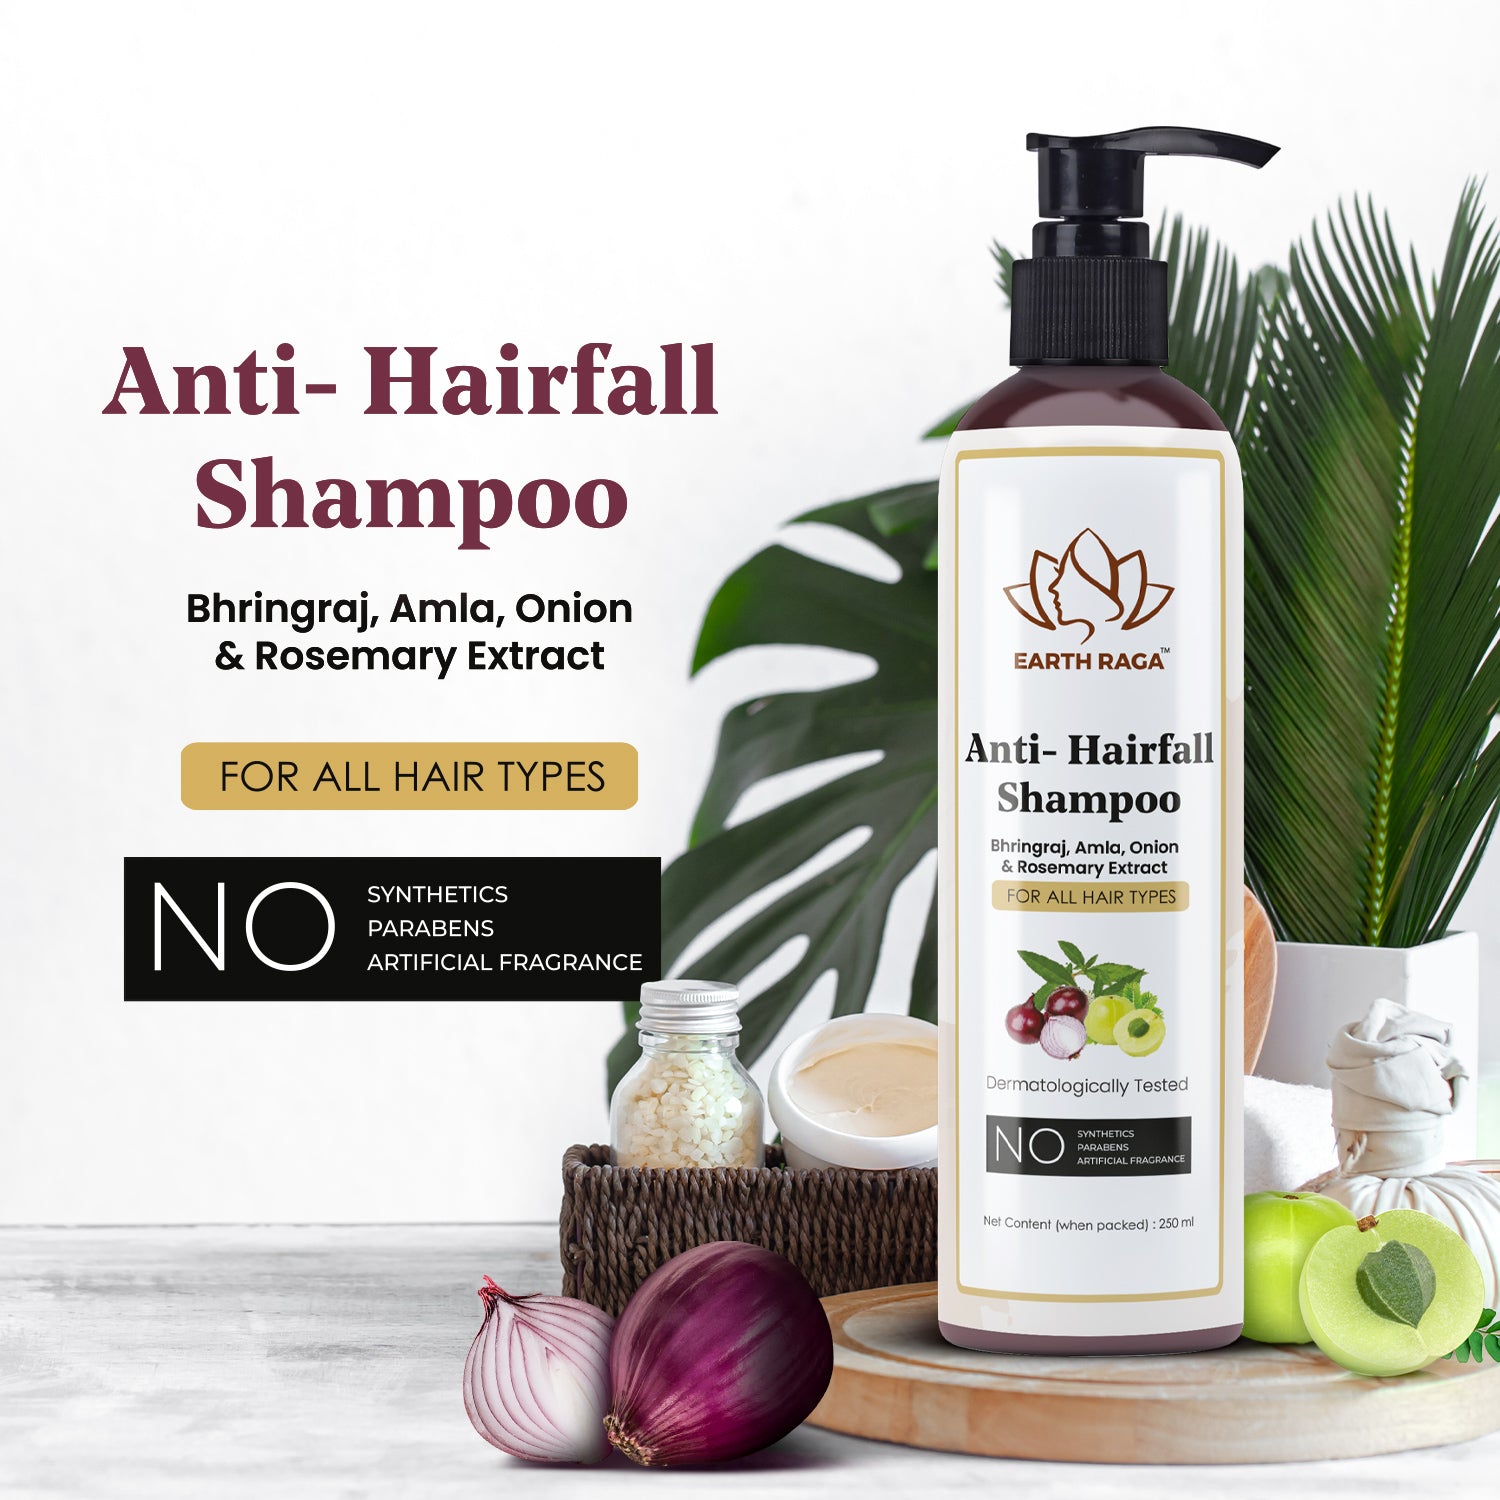 Anti-Hairfall Shampoo and Aloe Vera Neem Tea Tree Face Wash Combo